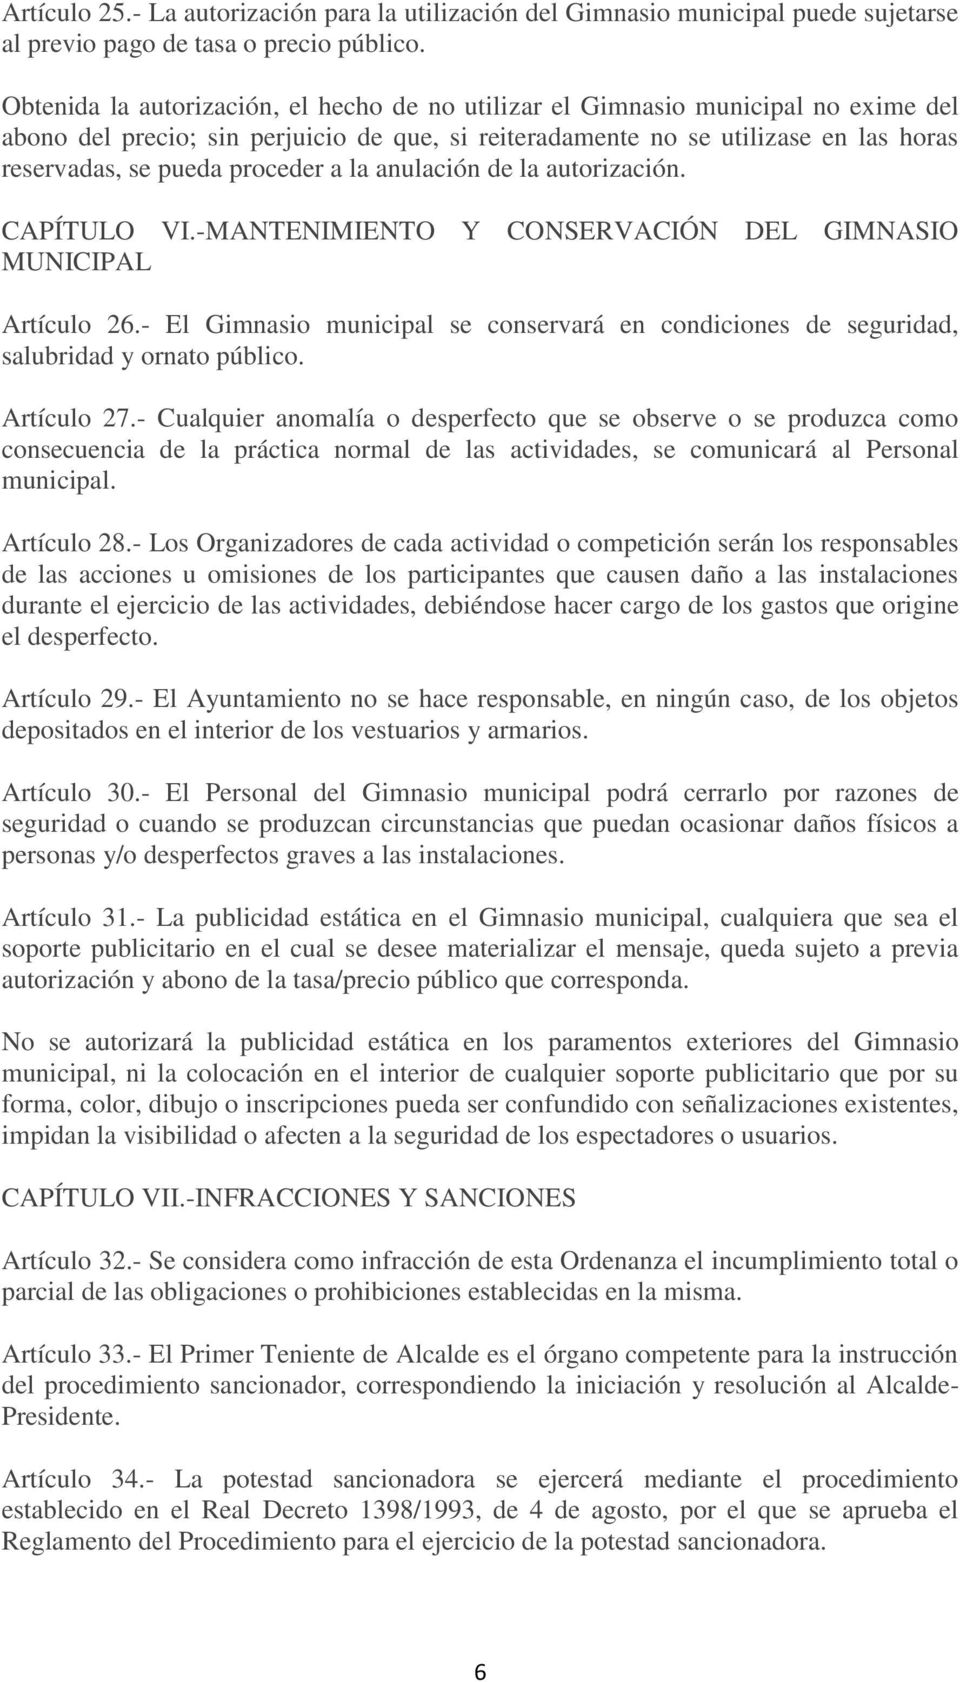 proceder a la anulación de la autorización. CAPÍTULO VI.-MANTENIMIENTO Y CONSERVACIÓN DEL GIMNASIO MUNICIPAL Artículo 26.